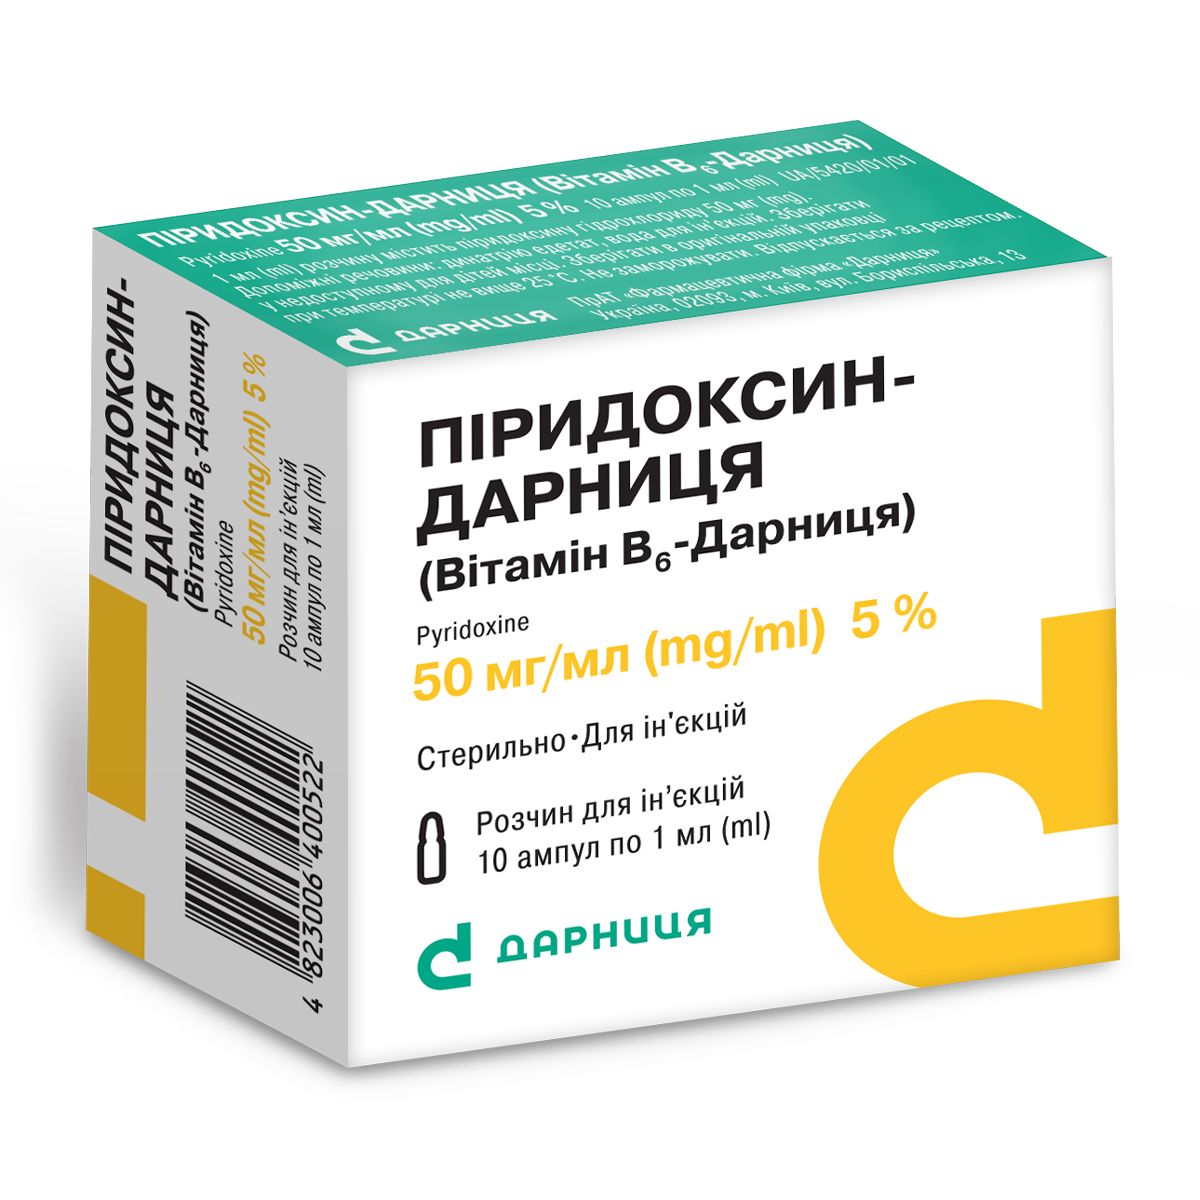 Пиридоксин-Дарница (витамин В6-Дарница)